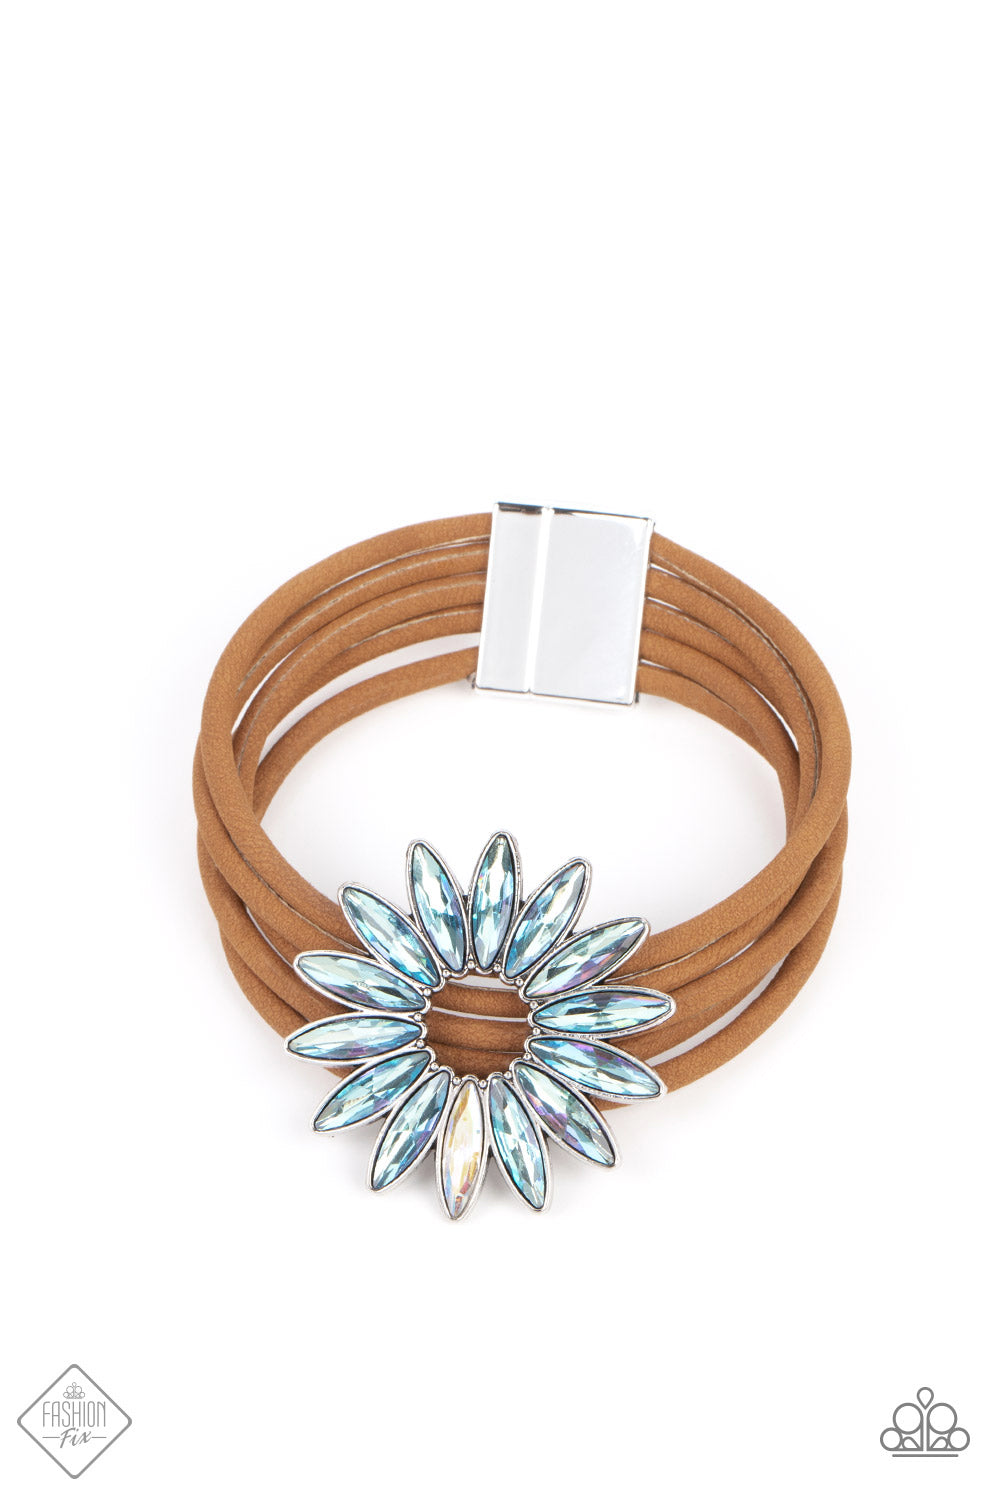 Celestial Cruise - Multicolor Iridescent Necklace/Bracelet set